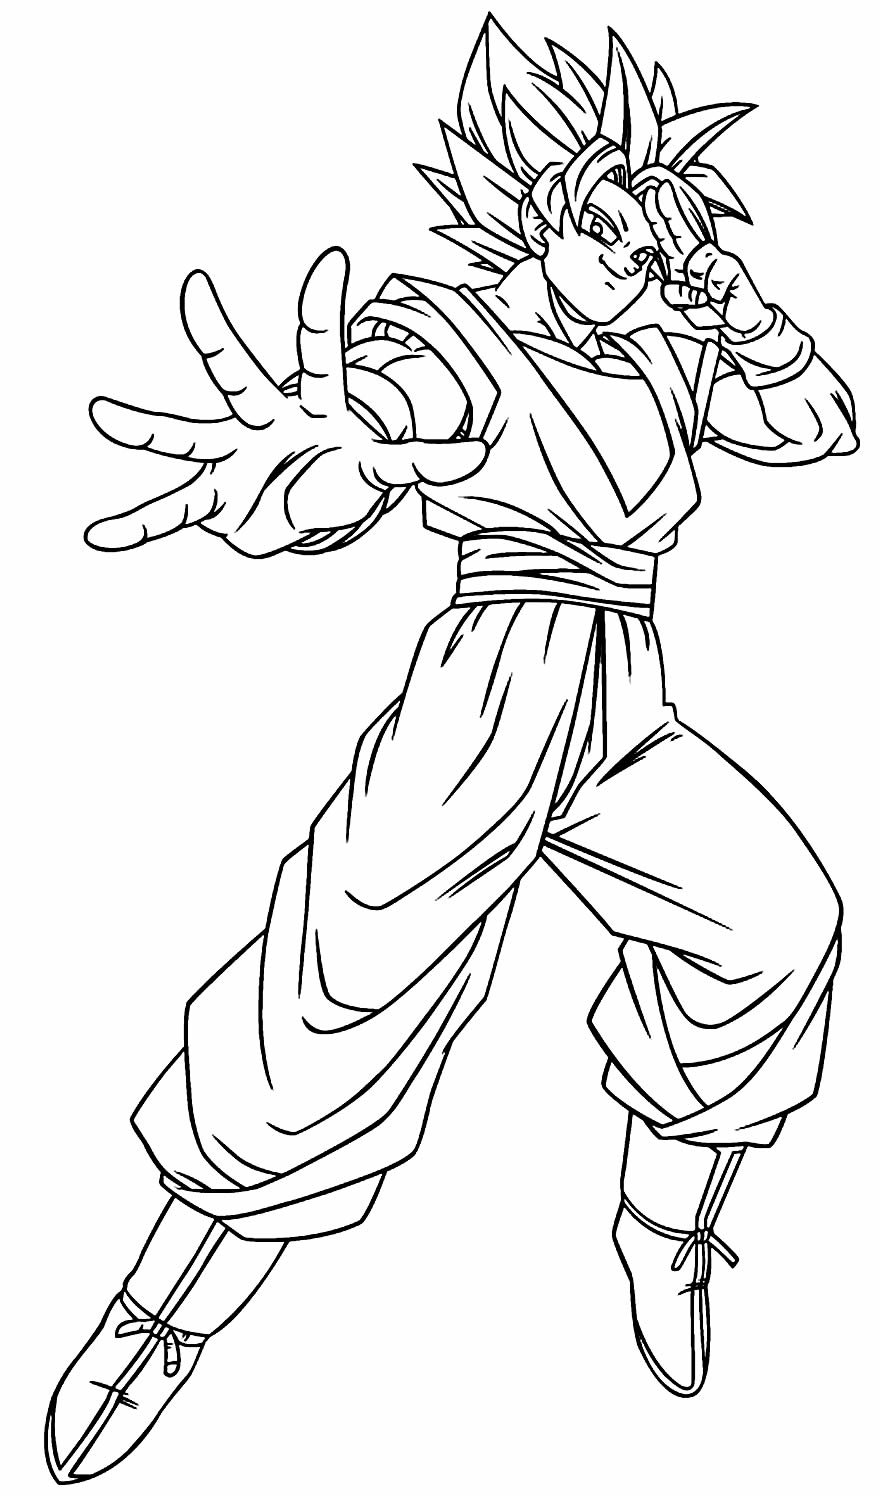 Desenho para pintar de Goku